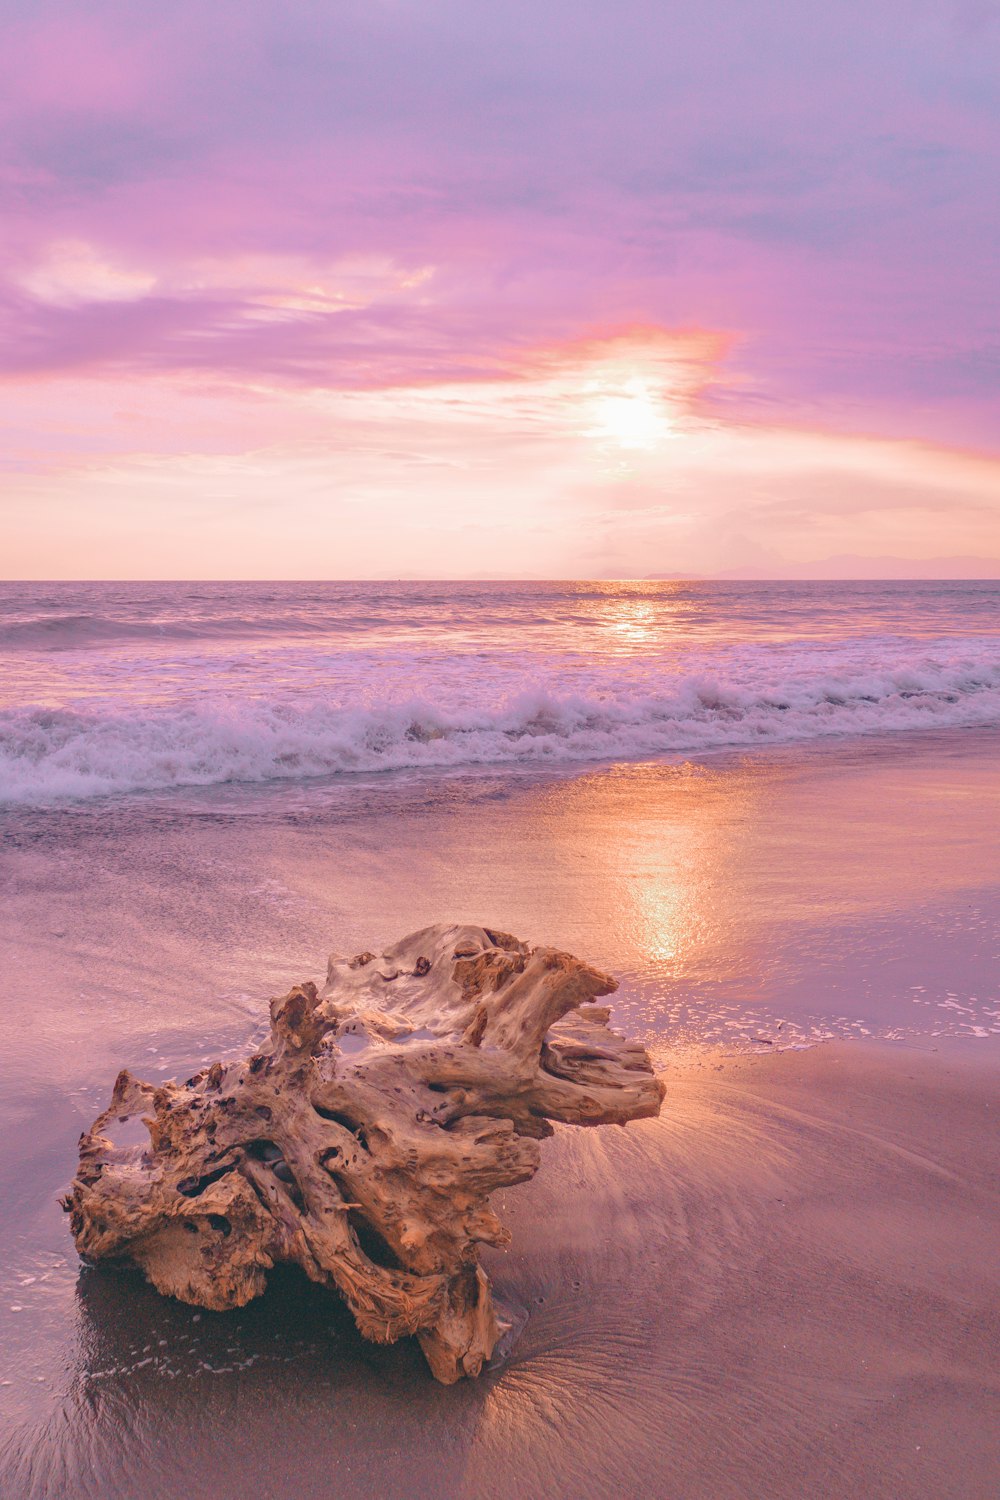 a log on a beach